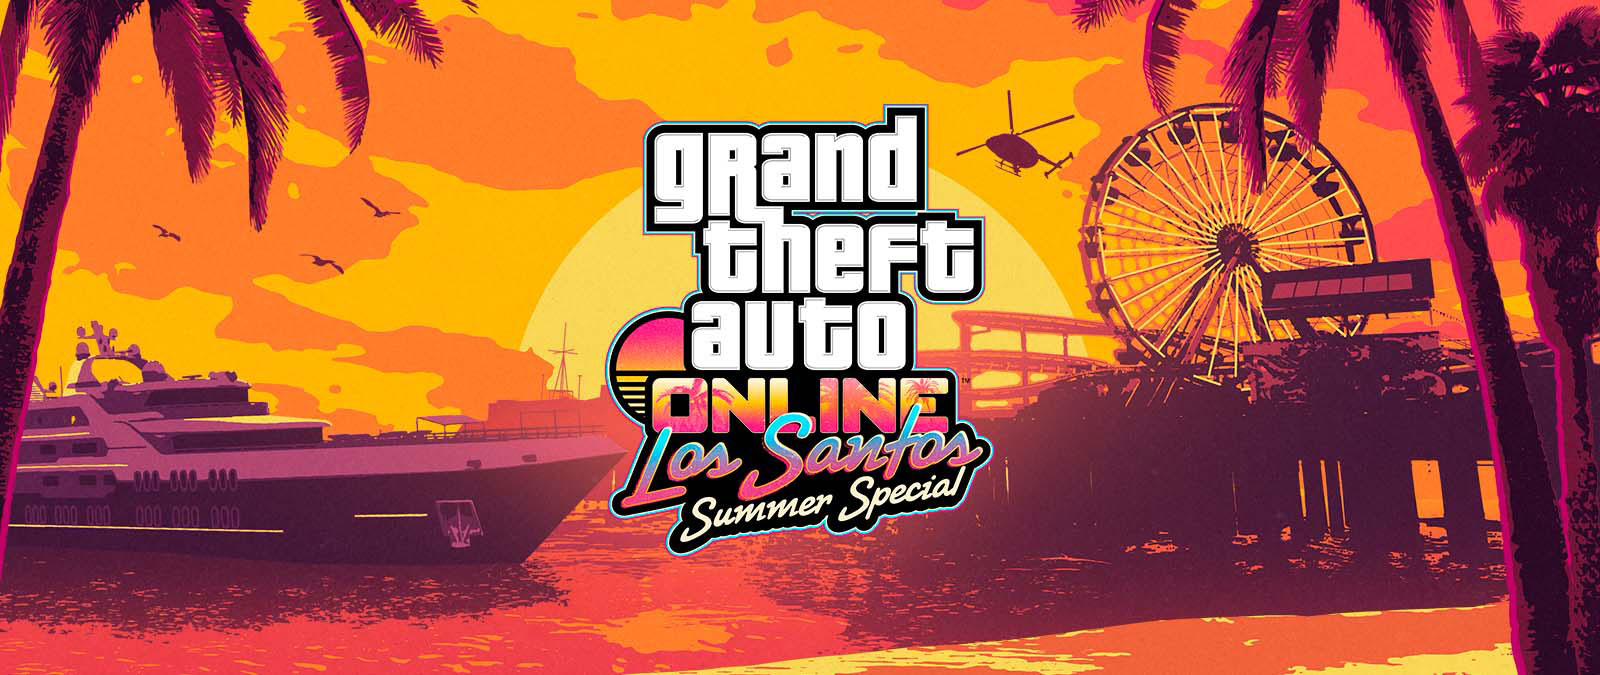 Grand Theft Auto Online. Los Santos Summer Special. En yacht, pariserhjul og en helikopter ved solnedgang